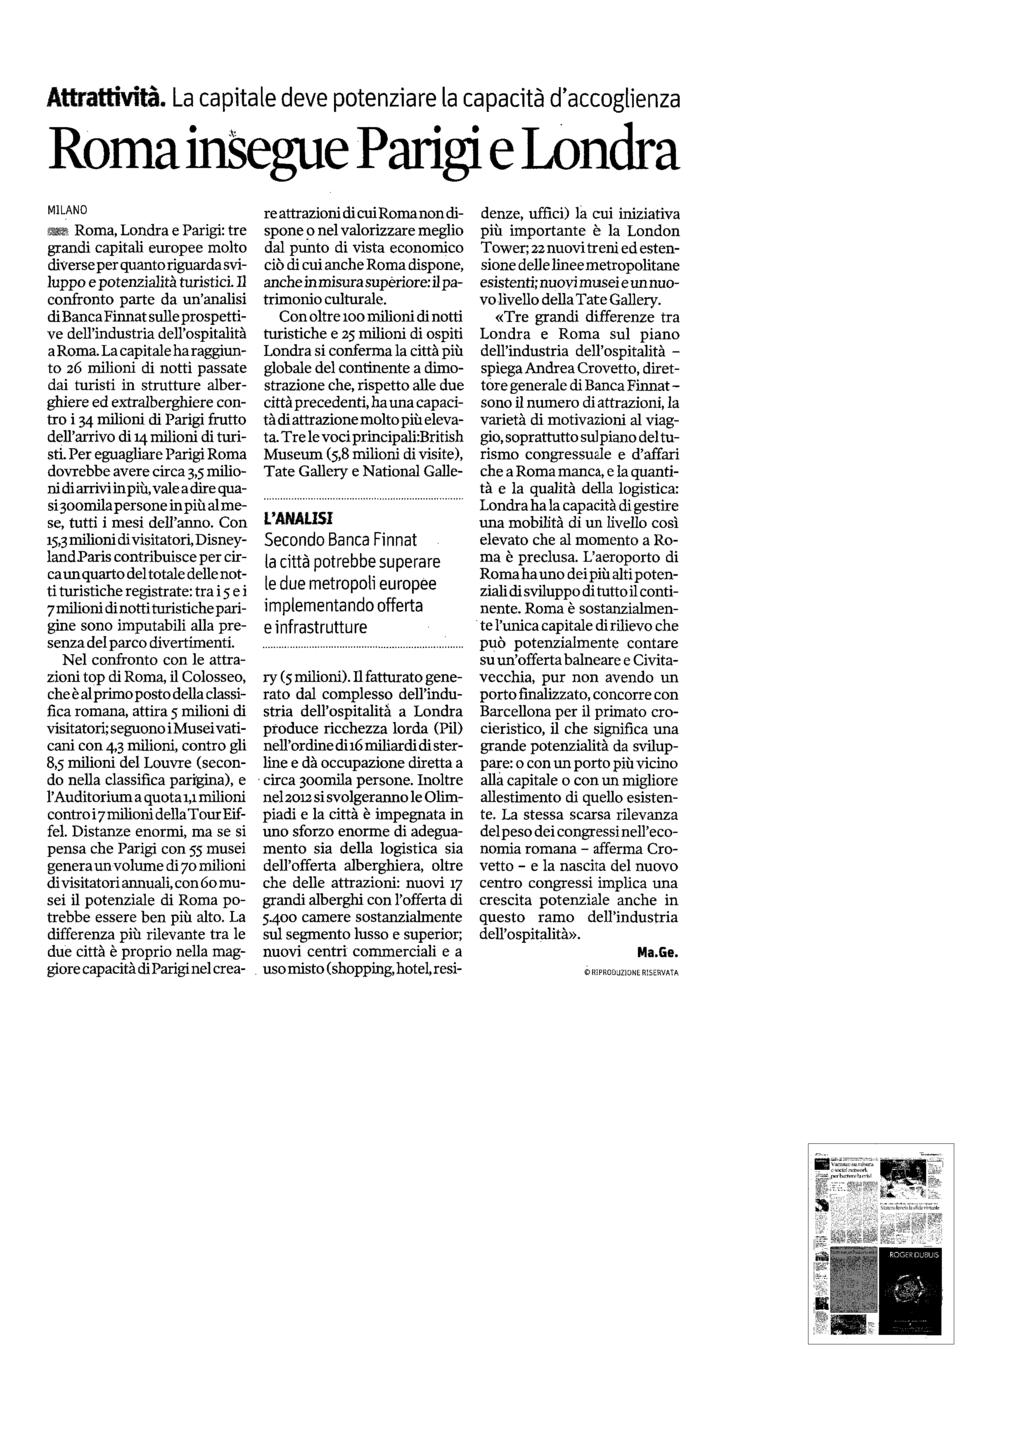 Quotidiano Milano 22-MAG-2011 Diffusione: 291.405 Lettori: 1.085.